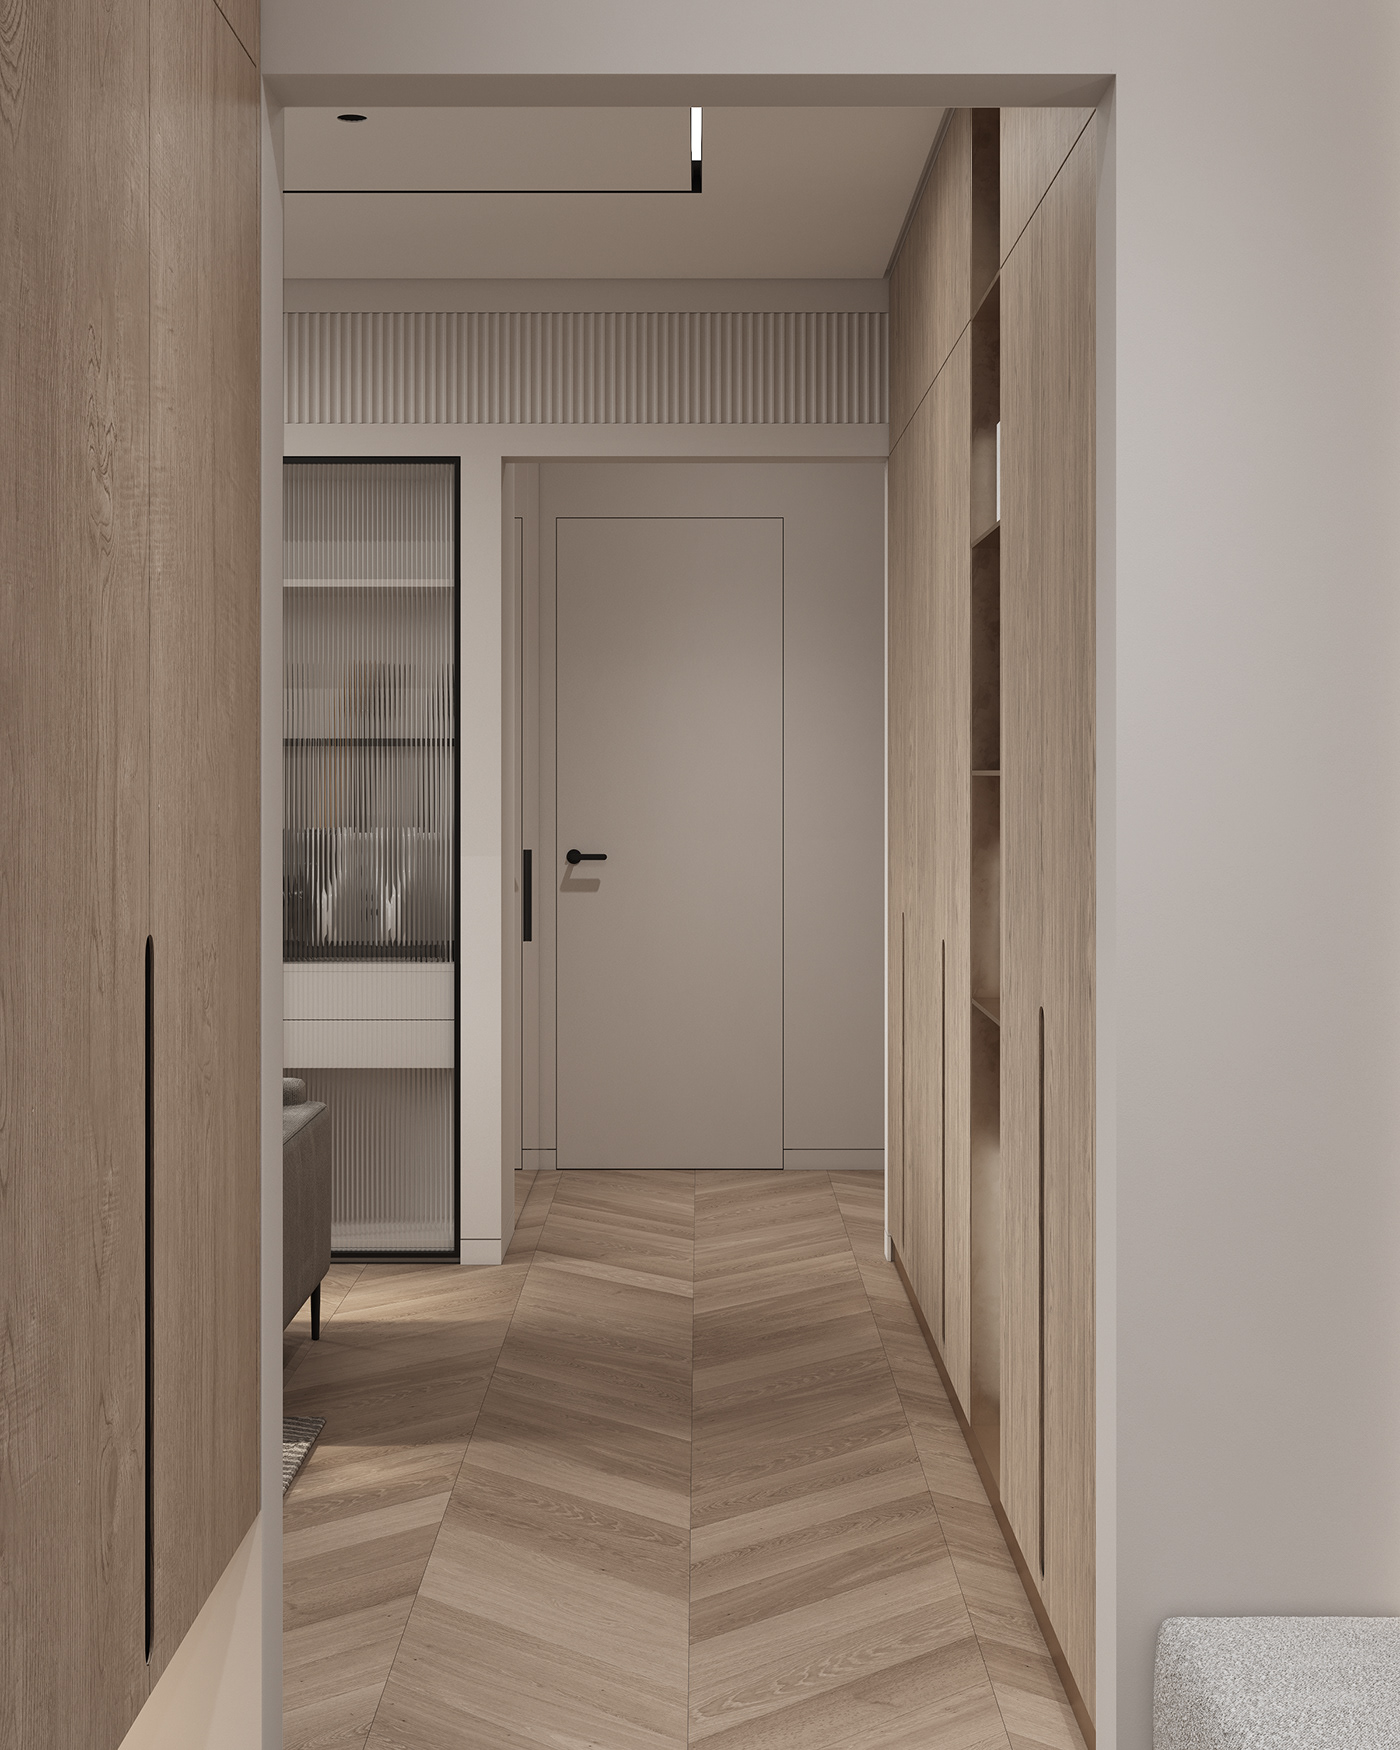 design flat Interior interiordesign Minimalism